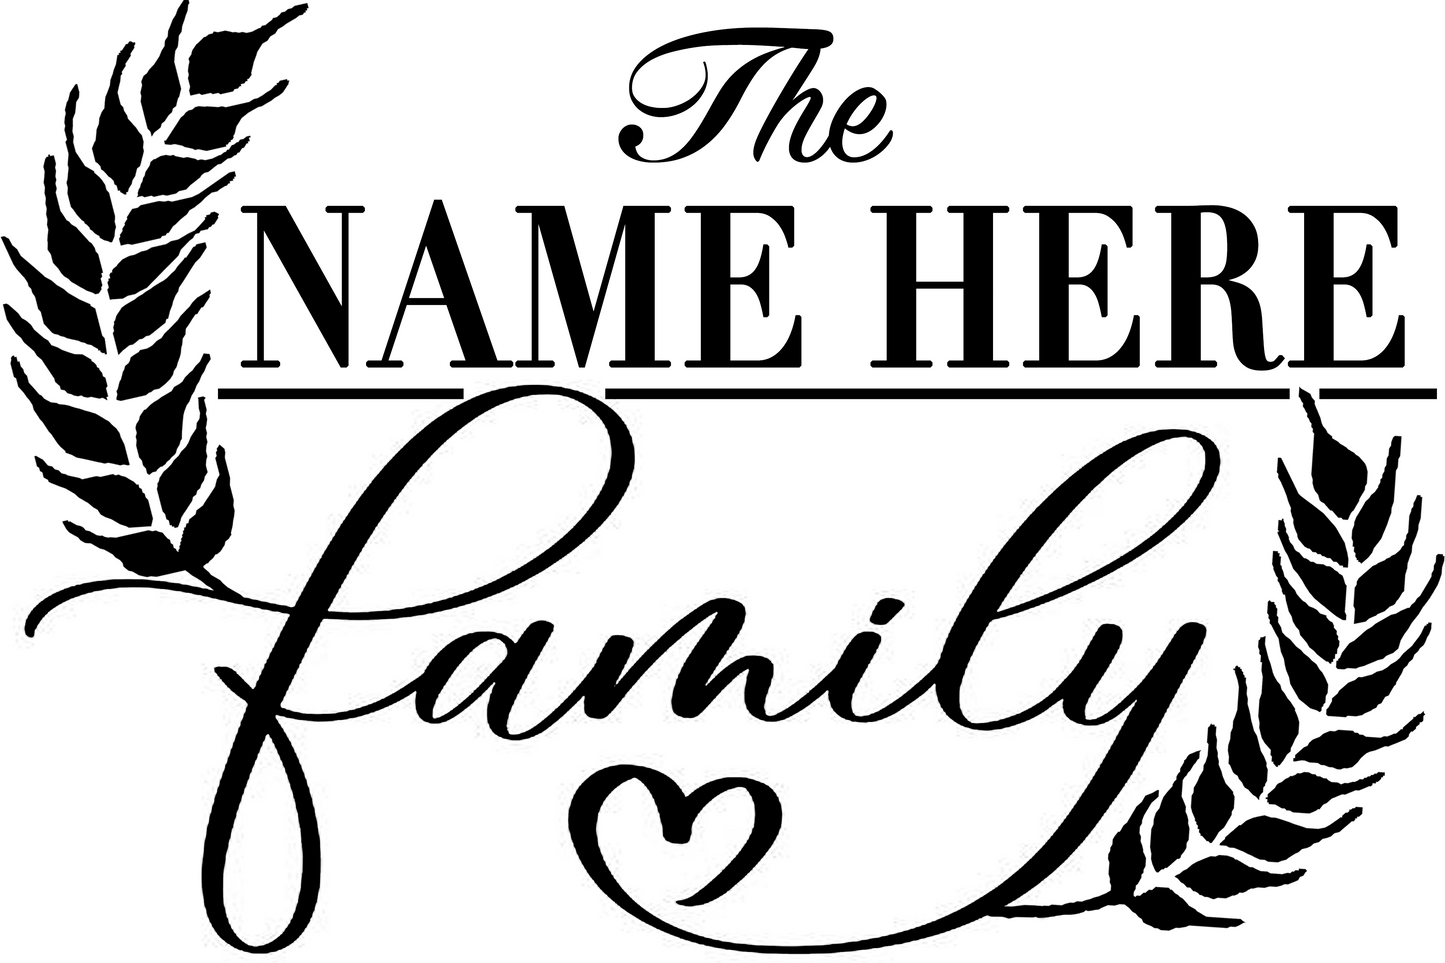 Family Name board (8" x 12")